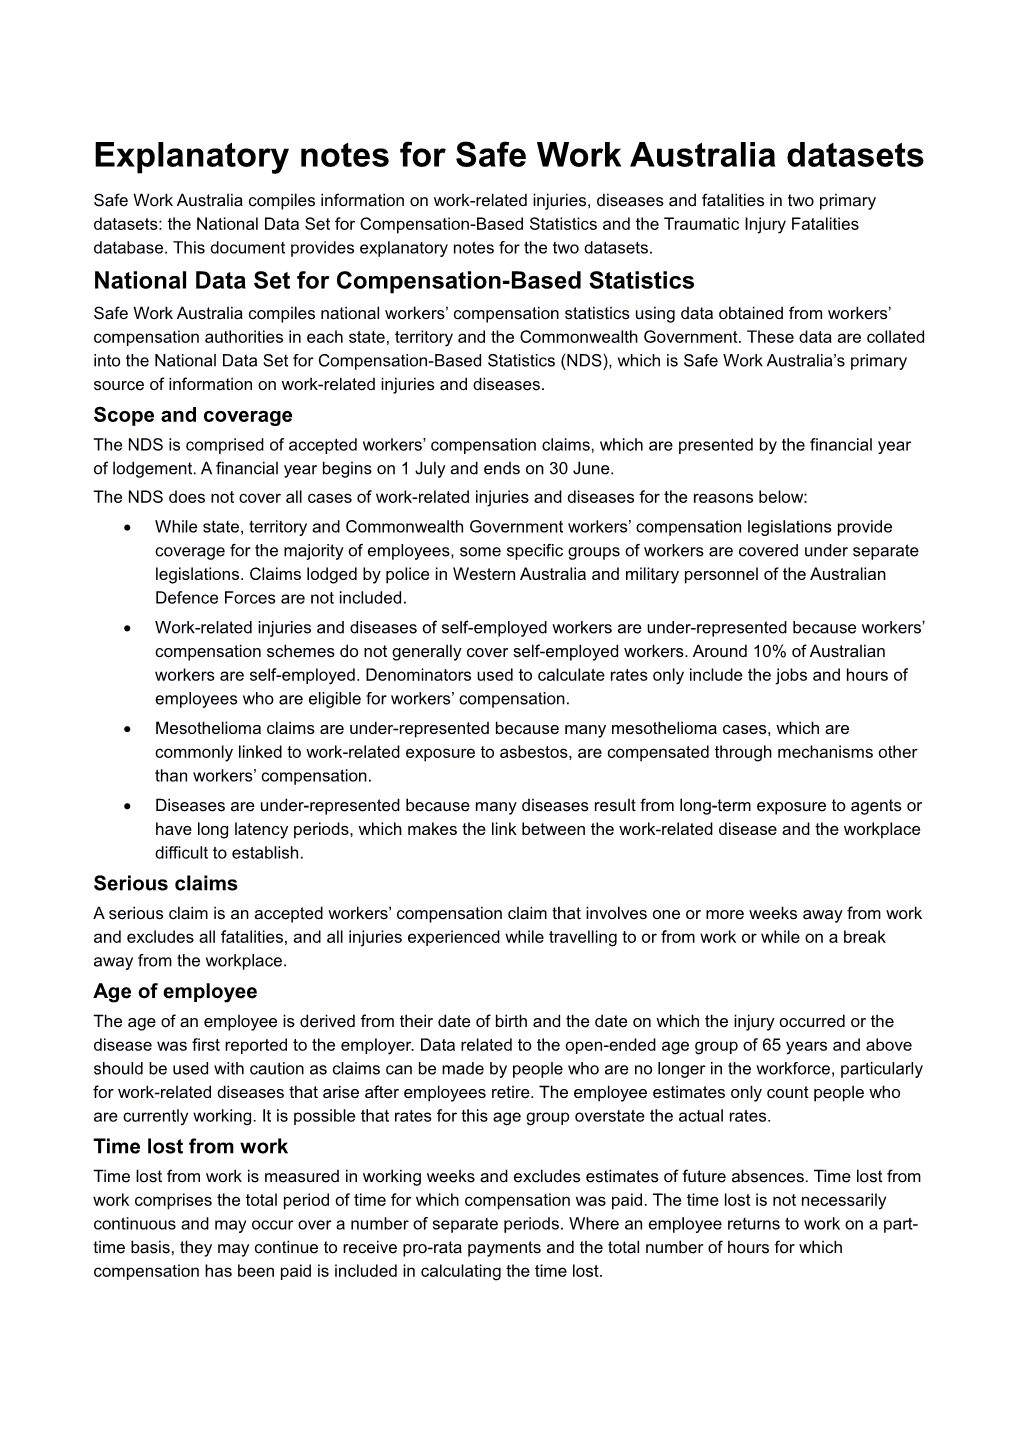 Explanatory Notes for Safe Work Australia Datasets